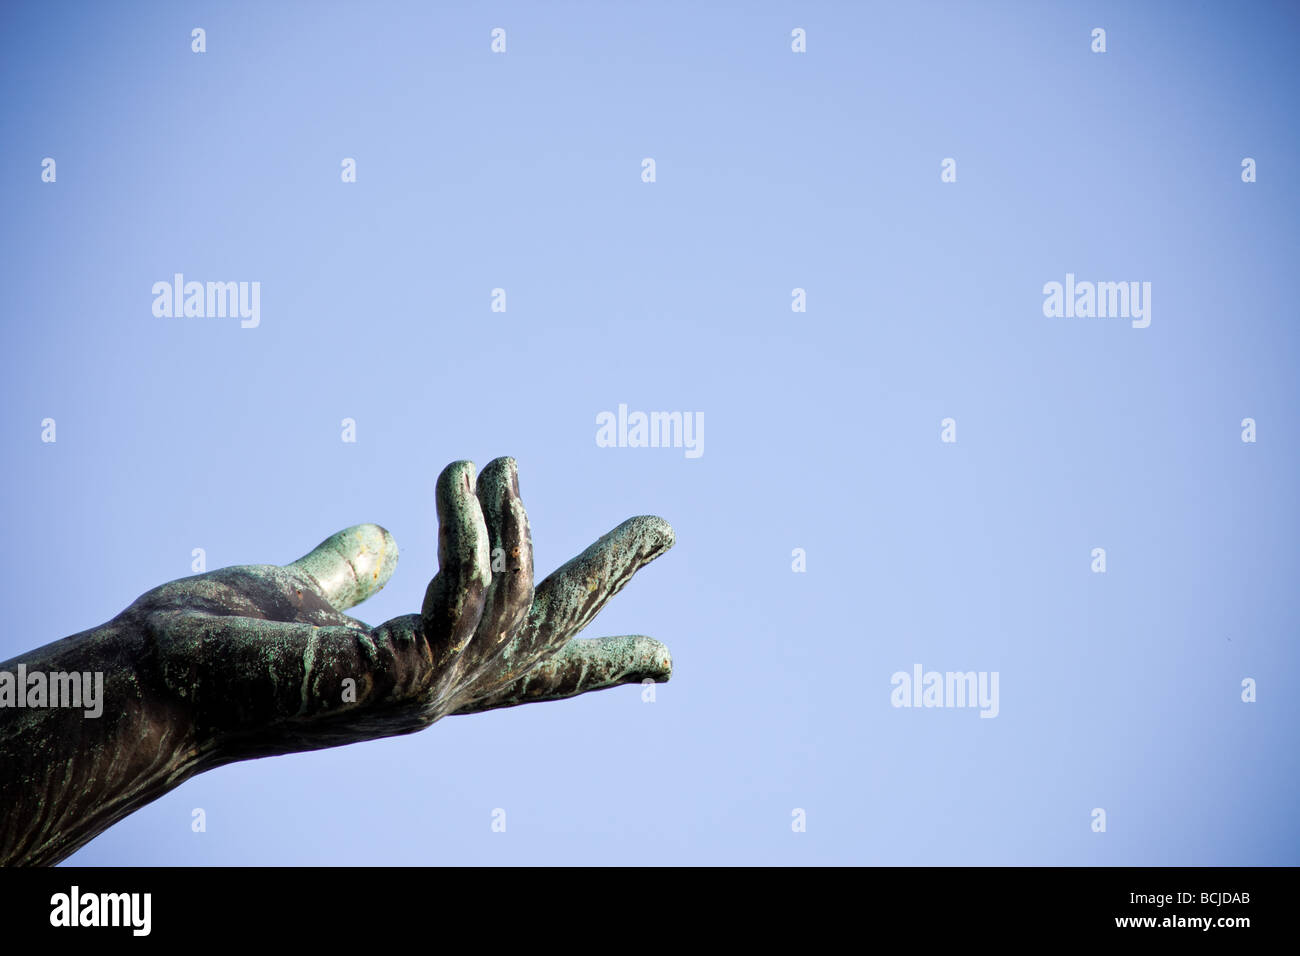 La main d'une statue en bronze montre au ciel Banque D'Images